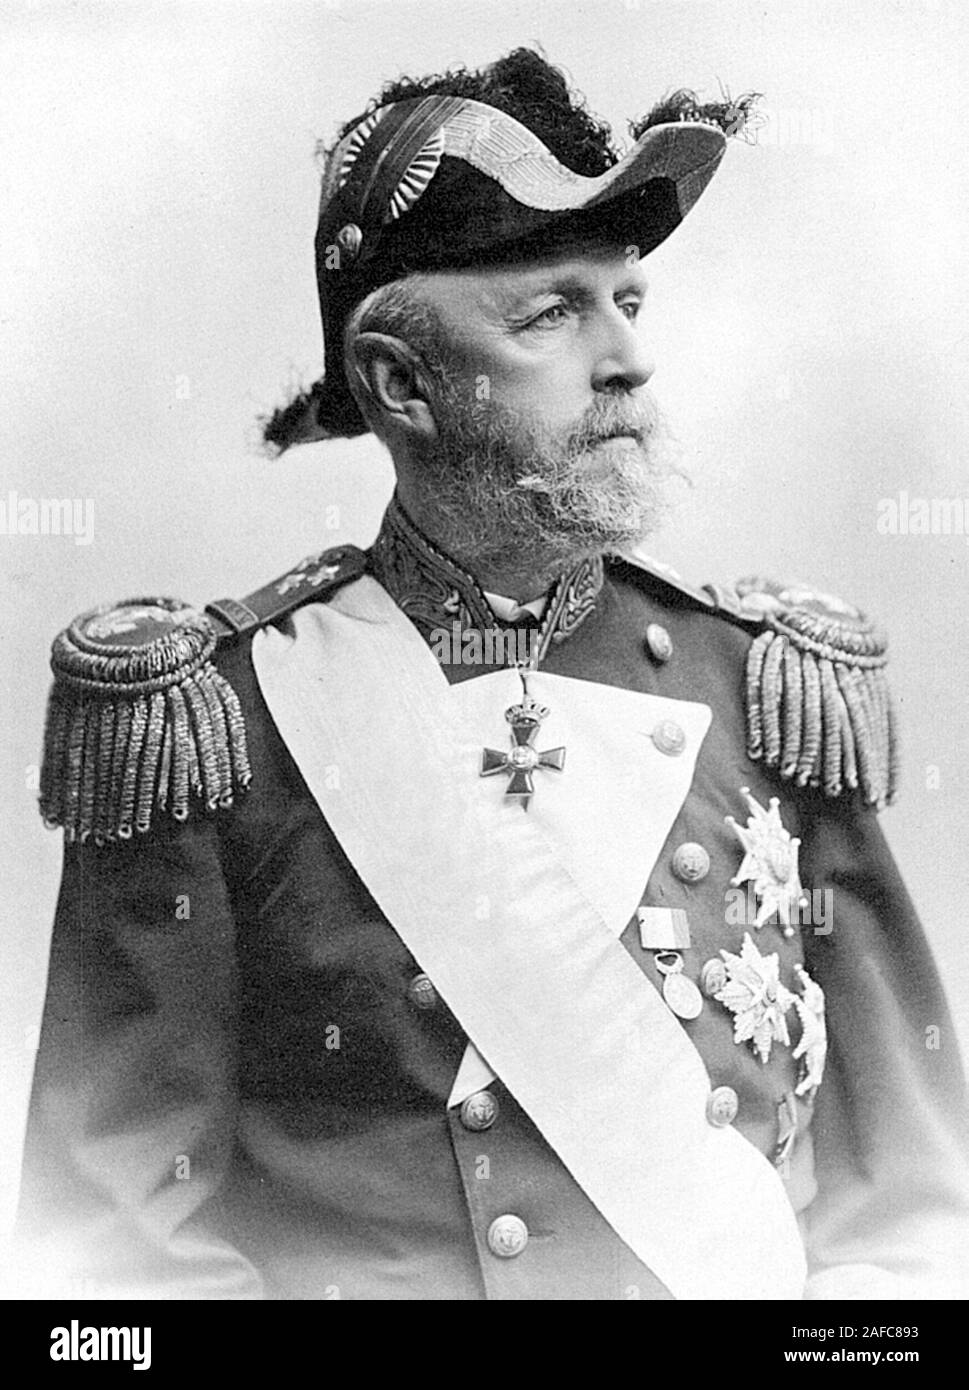 Oscar II (1829 - 1907) Rey de Suecia desde 1872 hasta su muerte, y también fue el último Rey de Noruega de la casa de Bernadotte Foto de stock